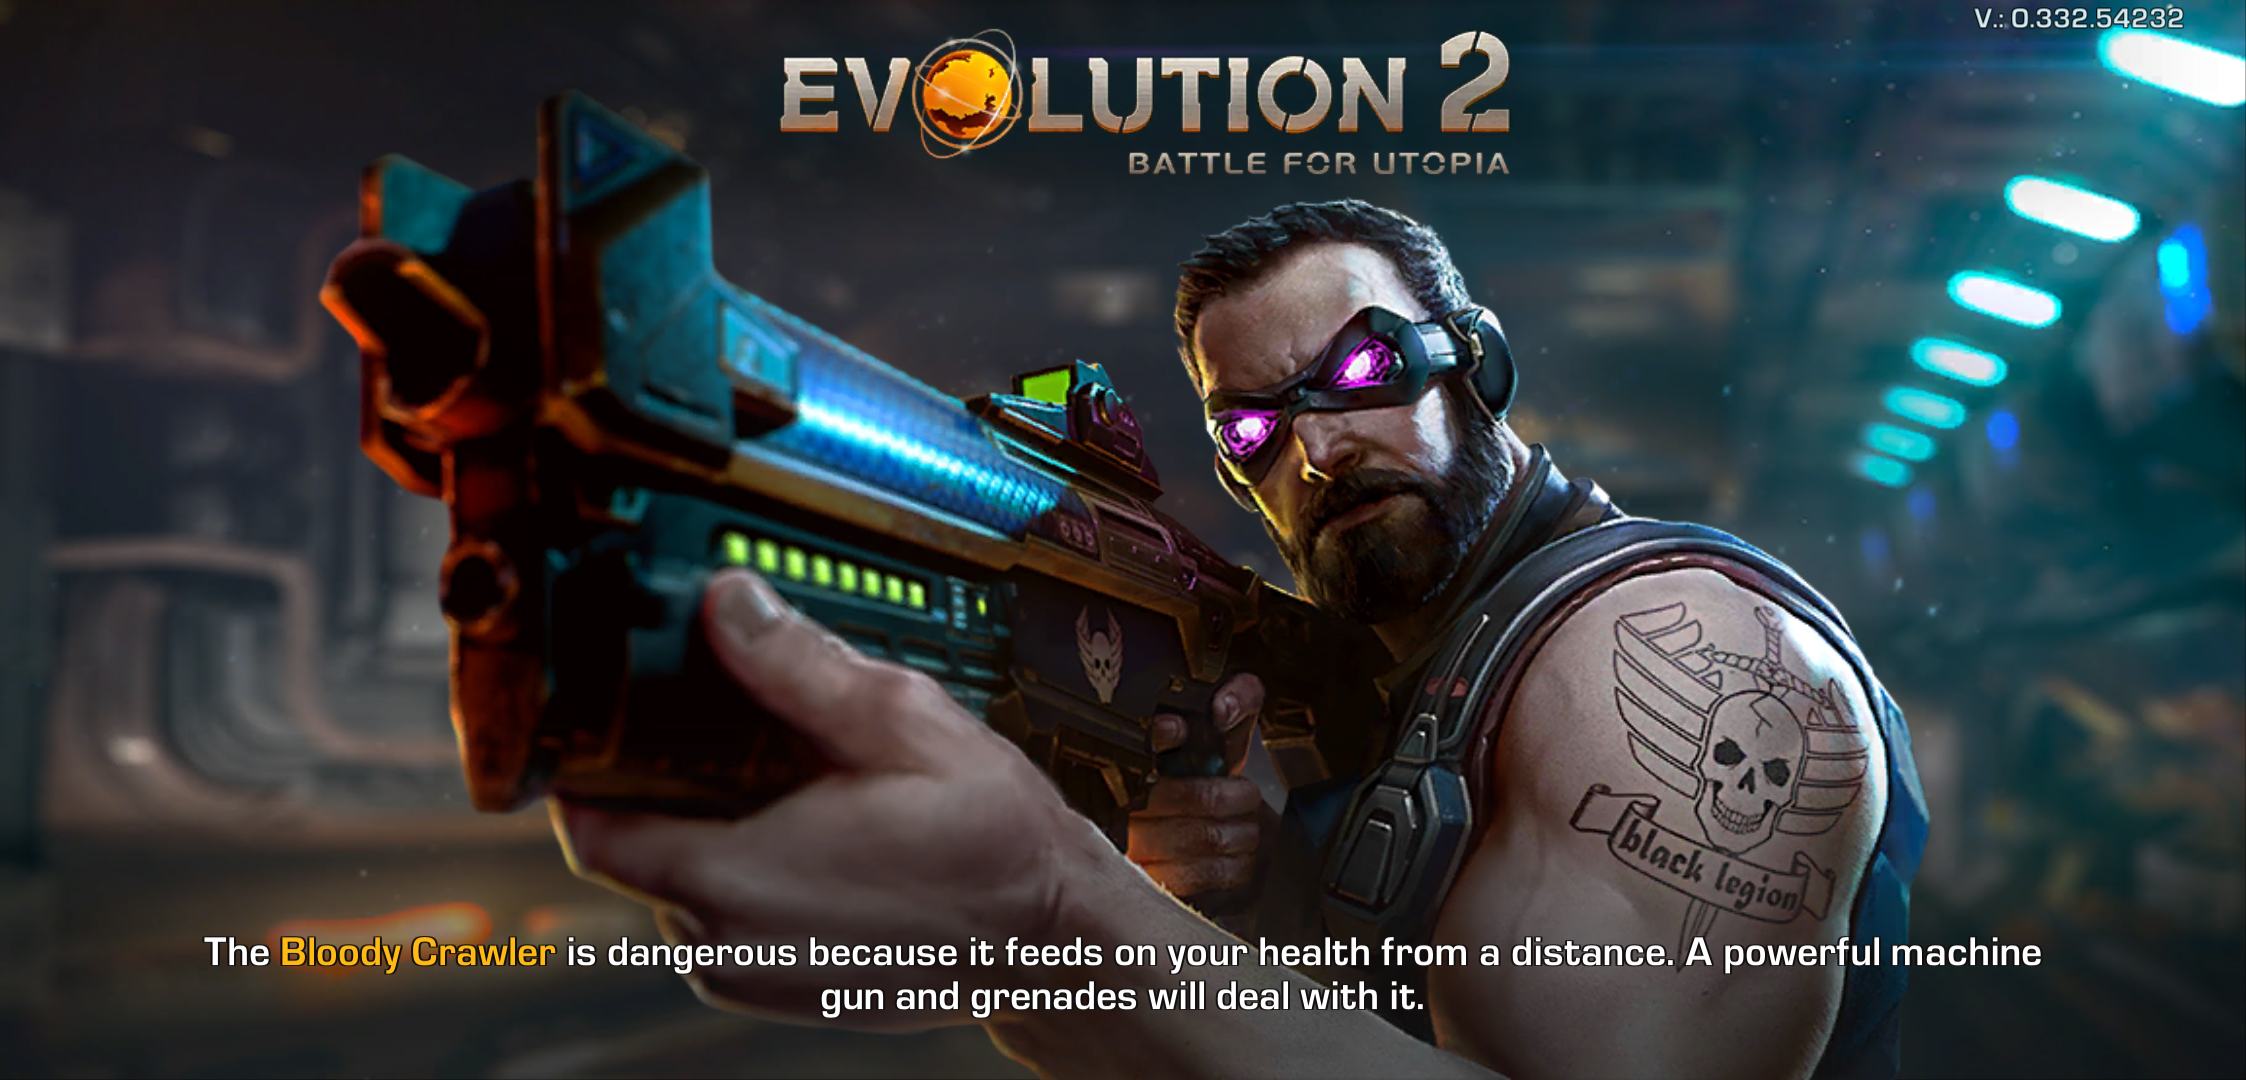 Evolution 2: Battle for Utopia – Game bắn súng góc nhìn thứ 3, đồ họa 3D sắc nét